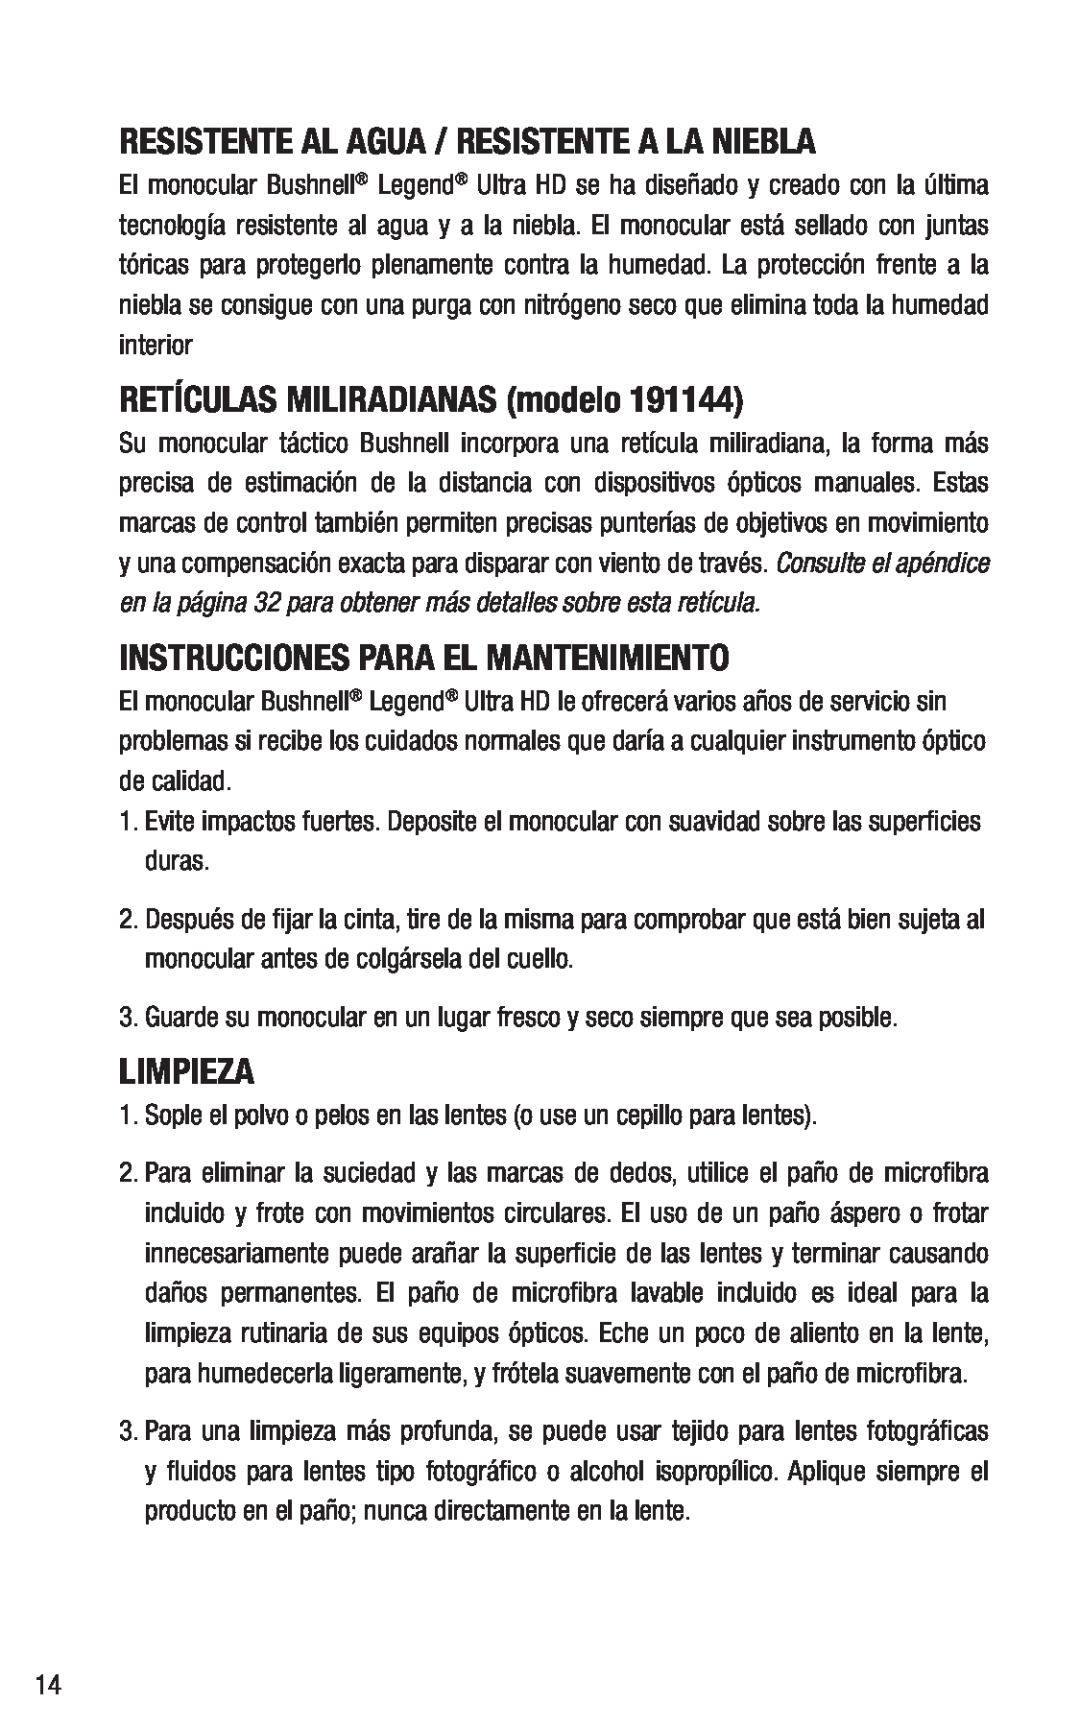 Bushnell 191144 instruction manual Resistente Al Agua / Resistente A La Niebla, RETÍCULAS MILIRADIANAS modelo, Limpieza 